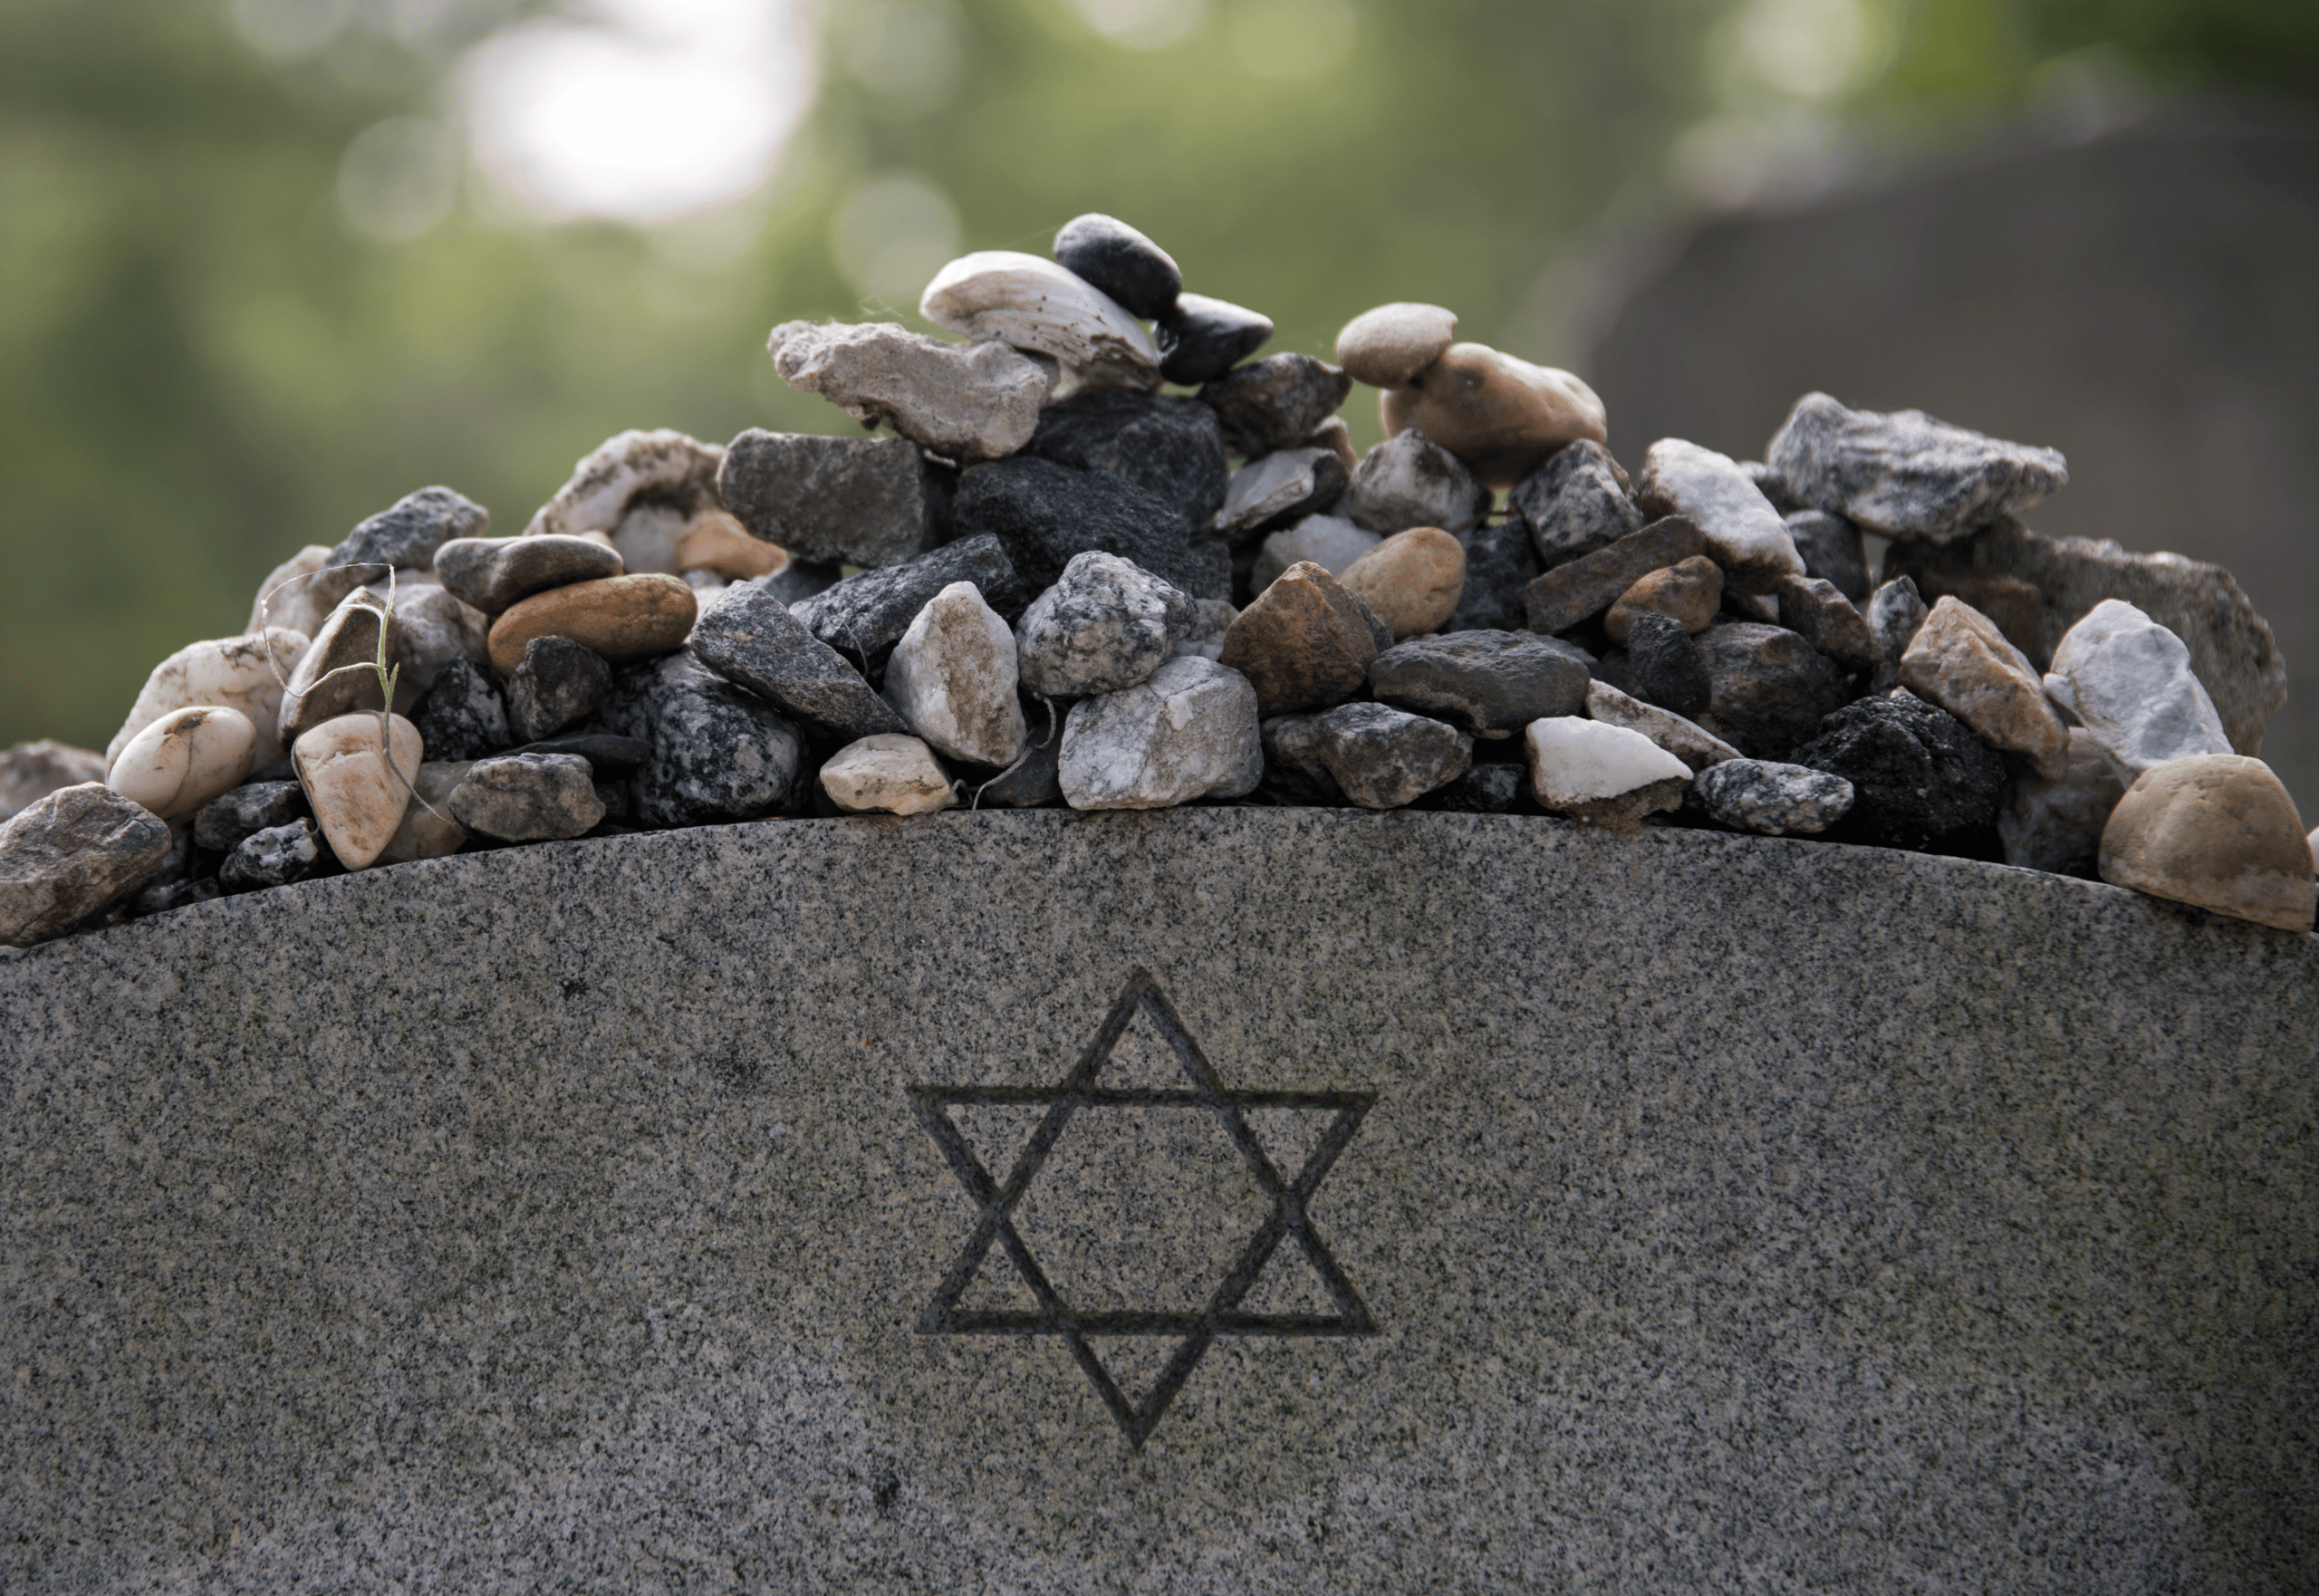 Una tumba judía. Imagen: Laura Caldwell Canva CC0